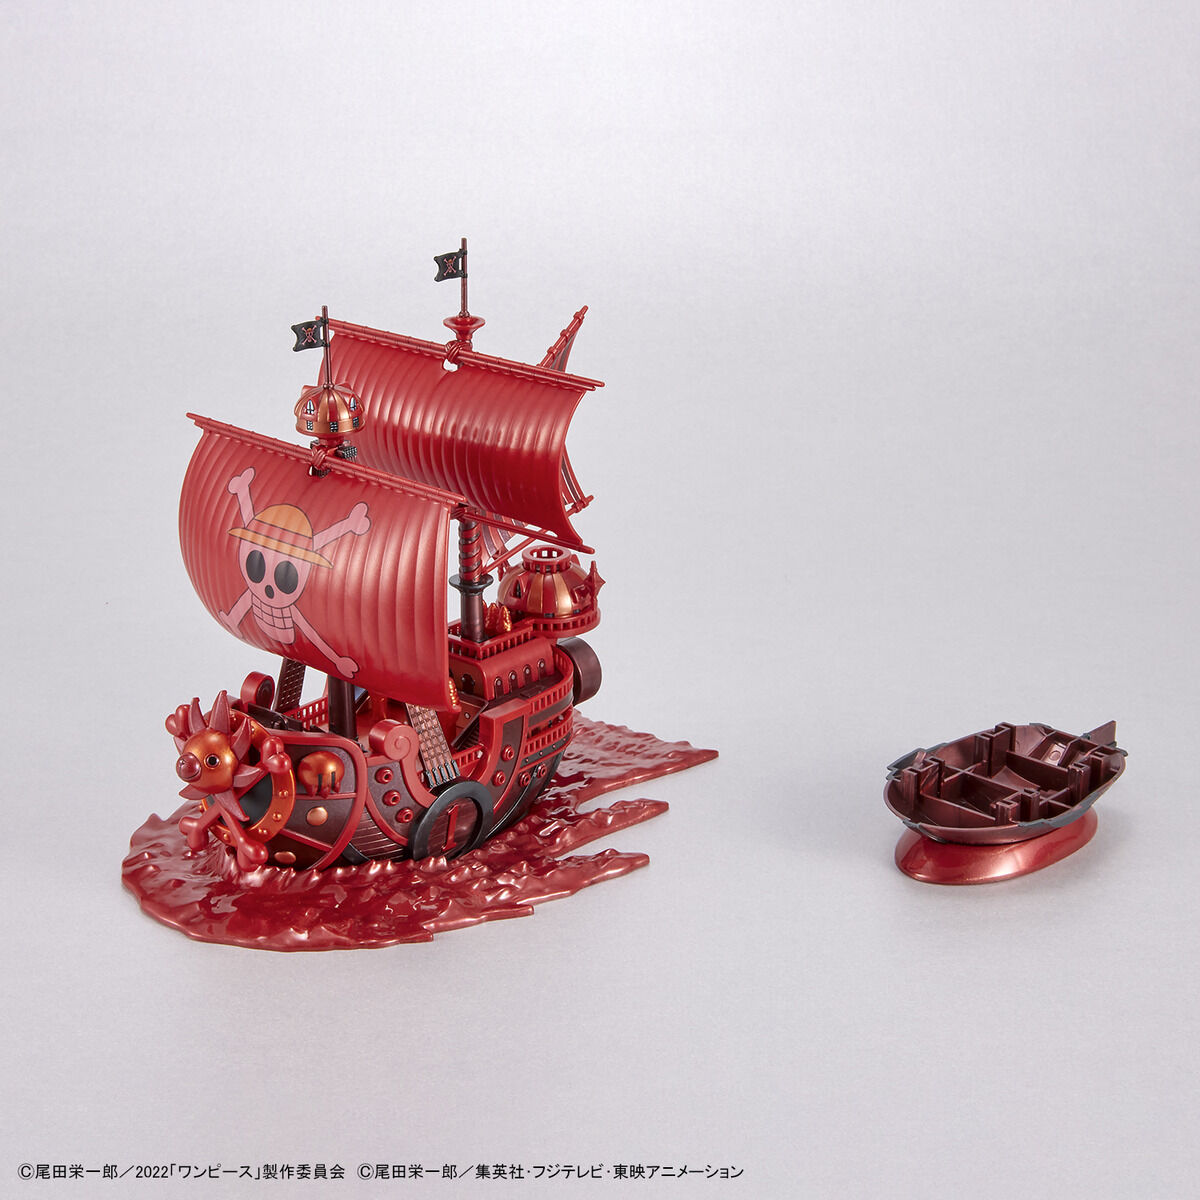 ワンピース偉大なる船コレクション サウザンド・サニー号「FILM RED」公開記念カラーVer. 07